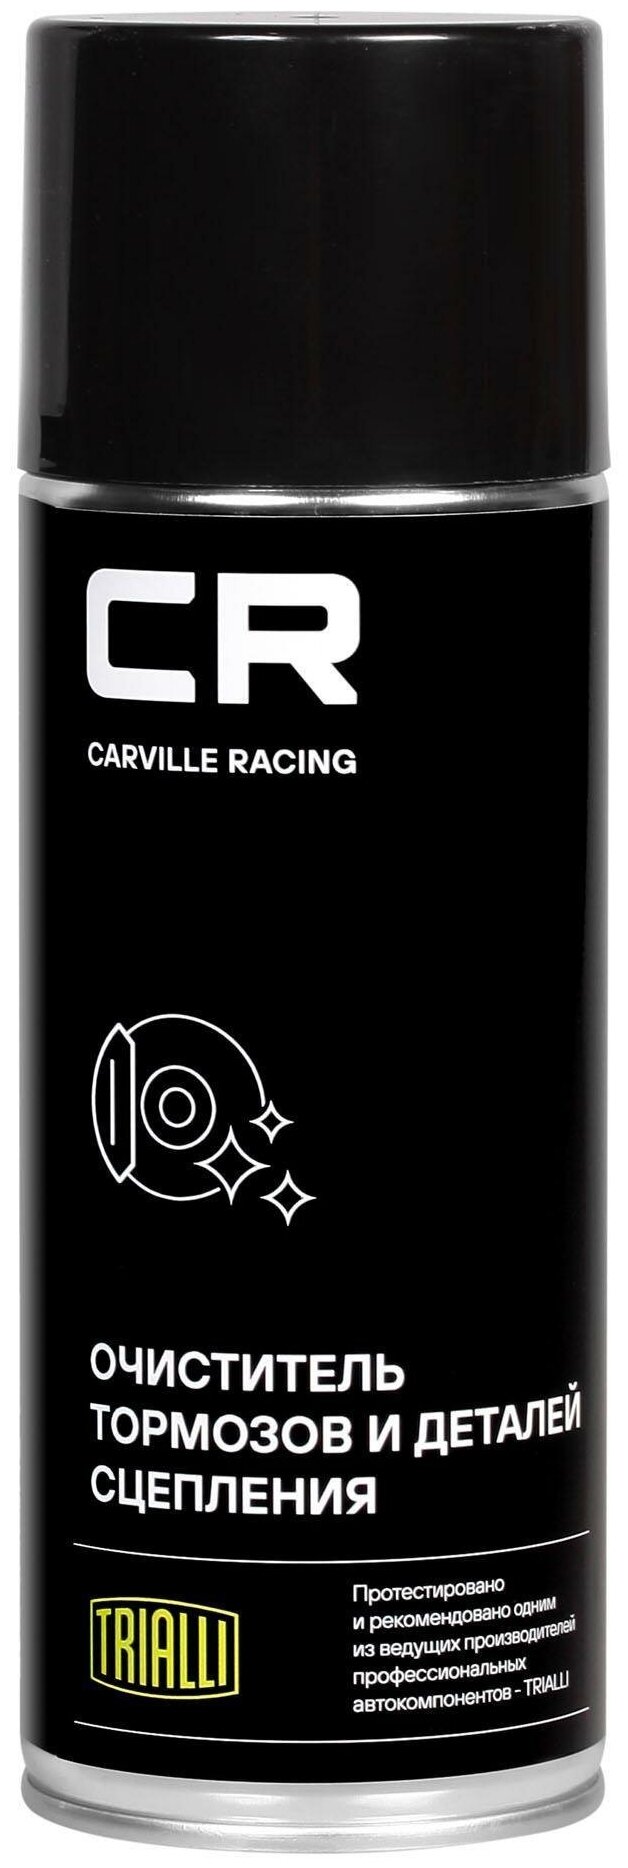 Очиститель CR тормозов и деталей сцепления аэро 520ml Carville Racing S7520125